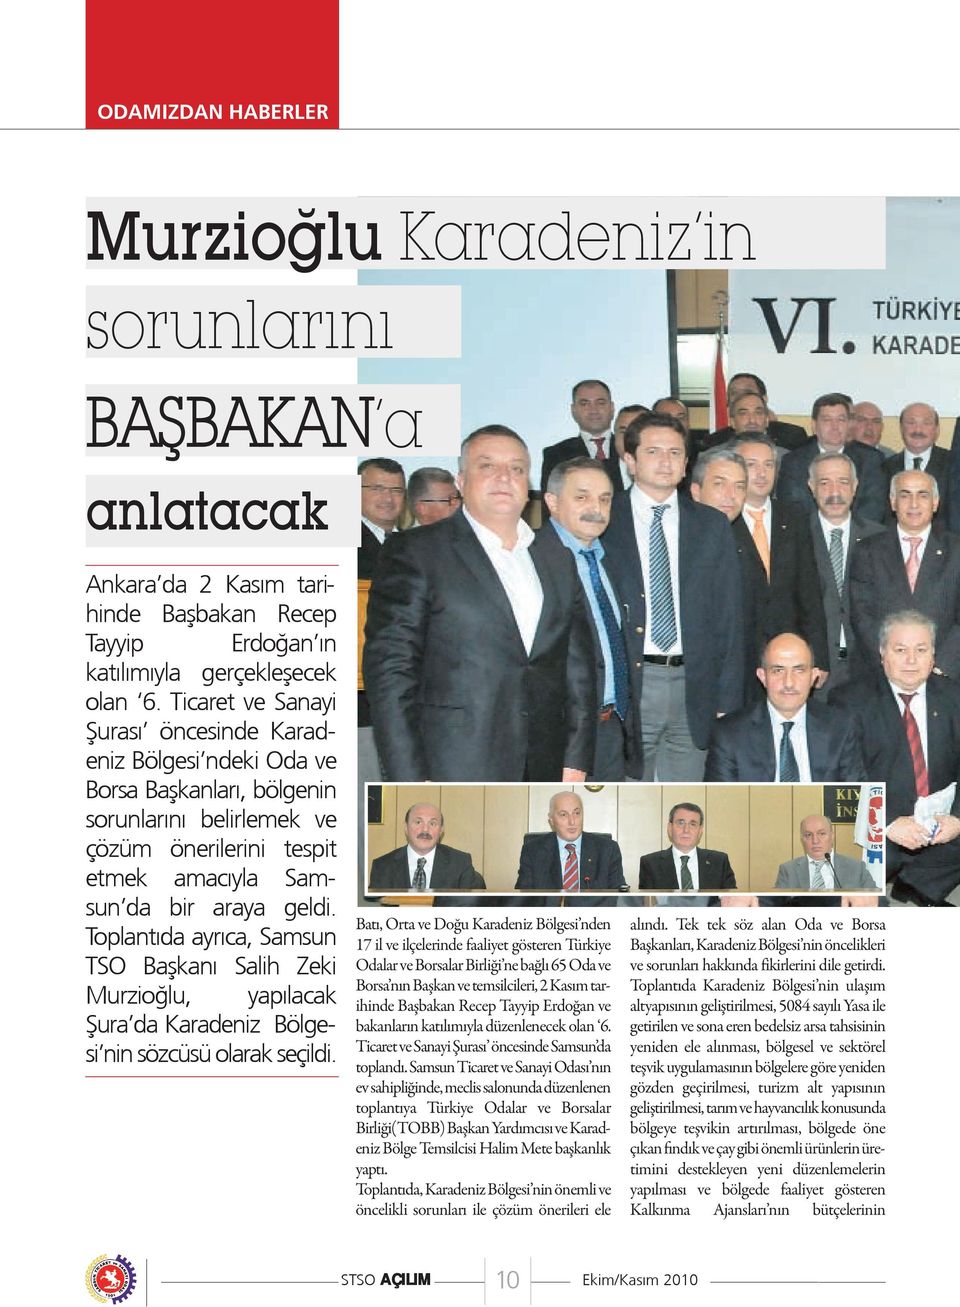 Toplantıda ayrıca, Samsun TSO Başkanı Salih Zeki Murzioğlu, yapılacak Şura da Karadeniz Bölgesi nin sözcüsü olarak seçildi.